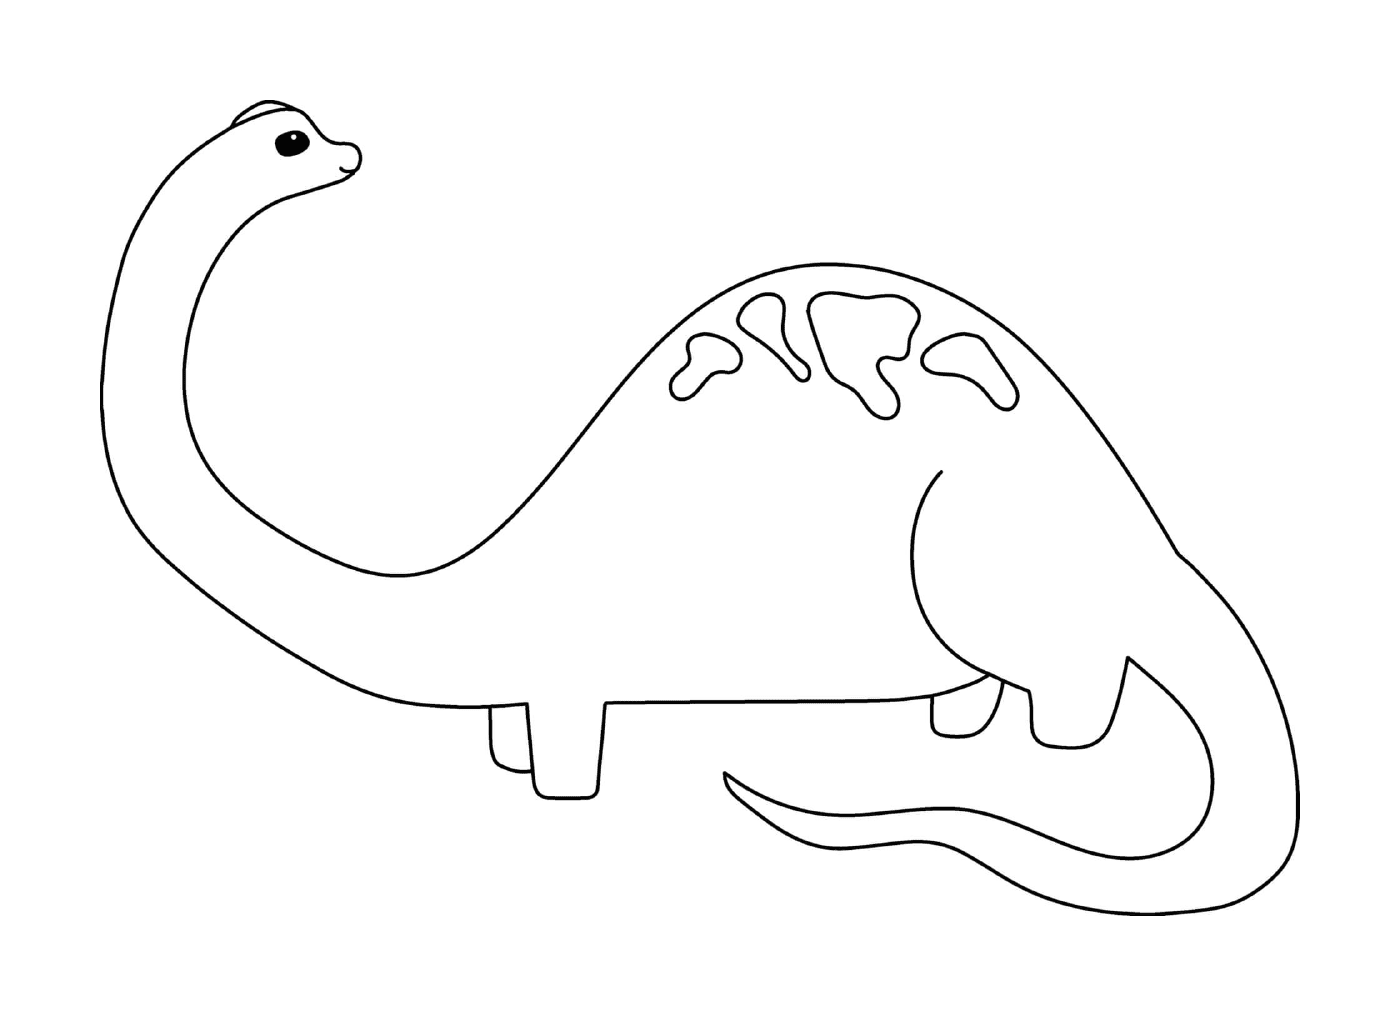  Dinosaurio Brachiosaurus 